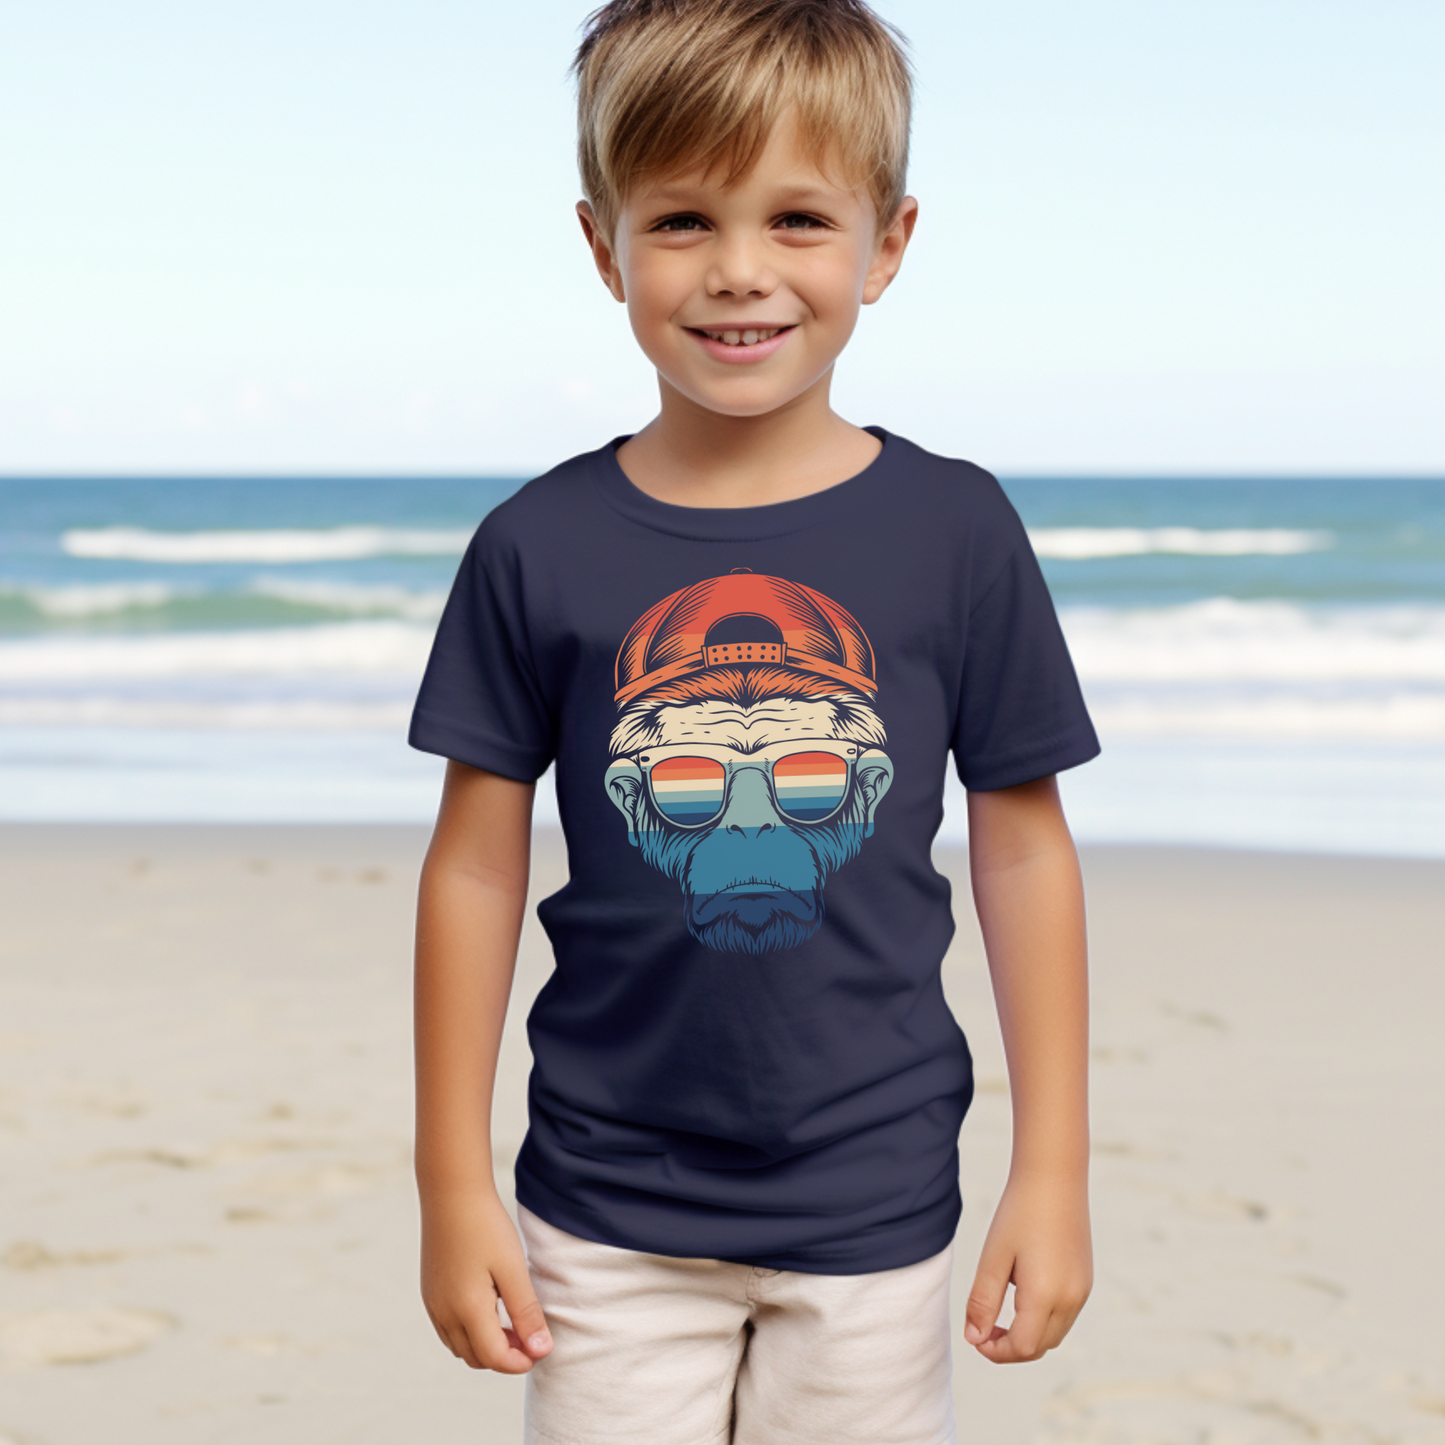 Retro Chimpanzee - Kids Printed T-shirt | 3 - 13 years